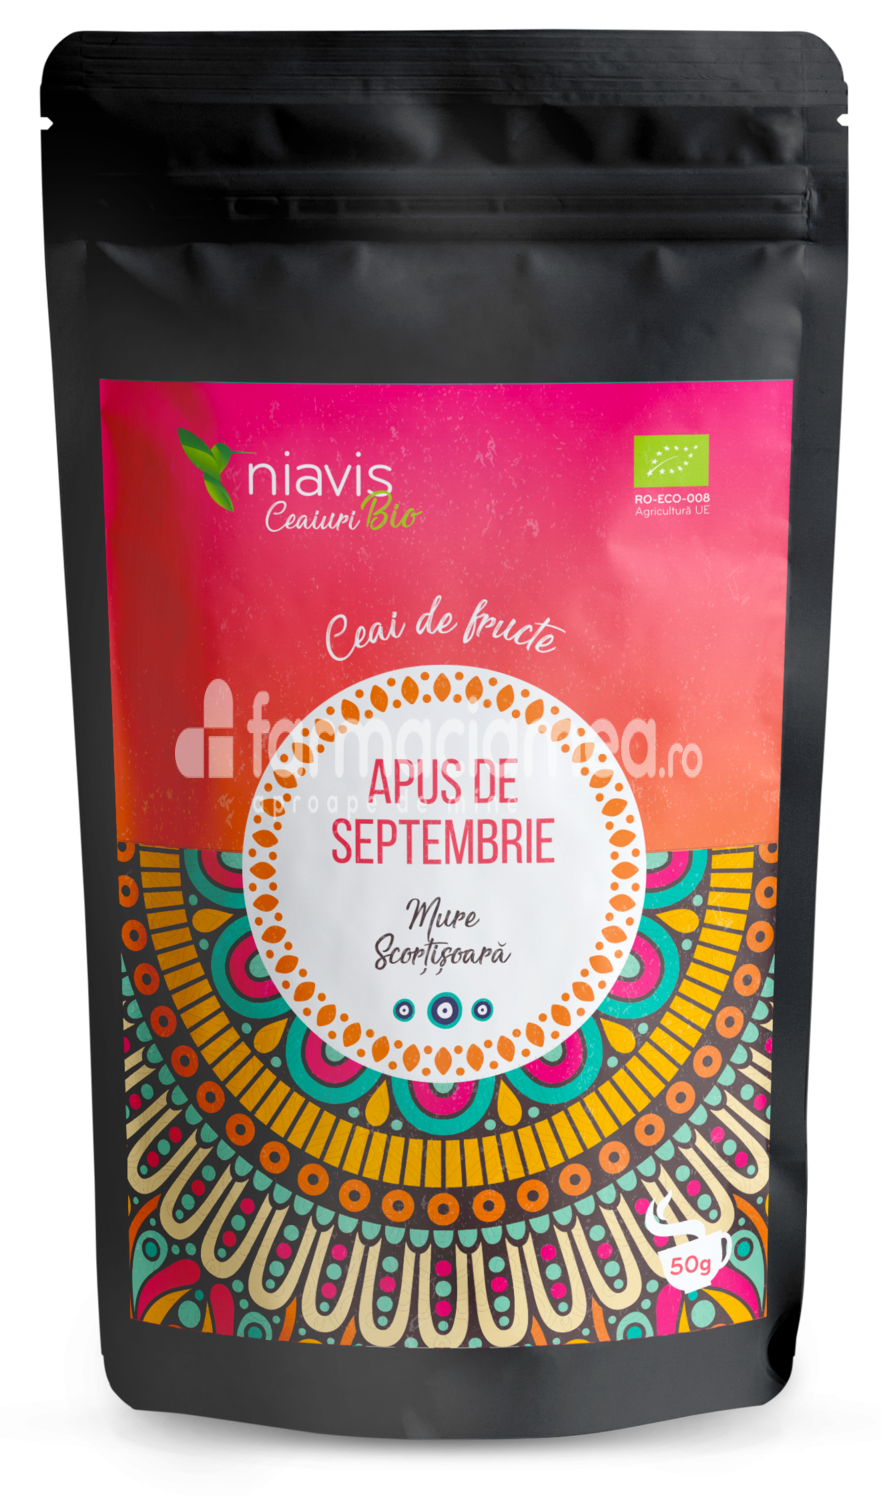 Ceaiuri - Niavis Ceai ecologic Bio "Apus de septembrie", aroma de mure si scortisoara, 50 g, farmaciamea.ro